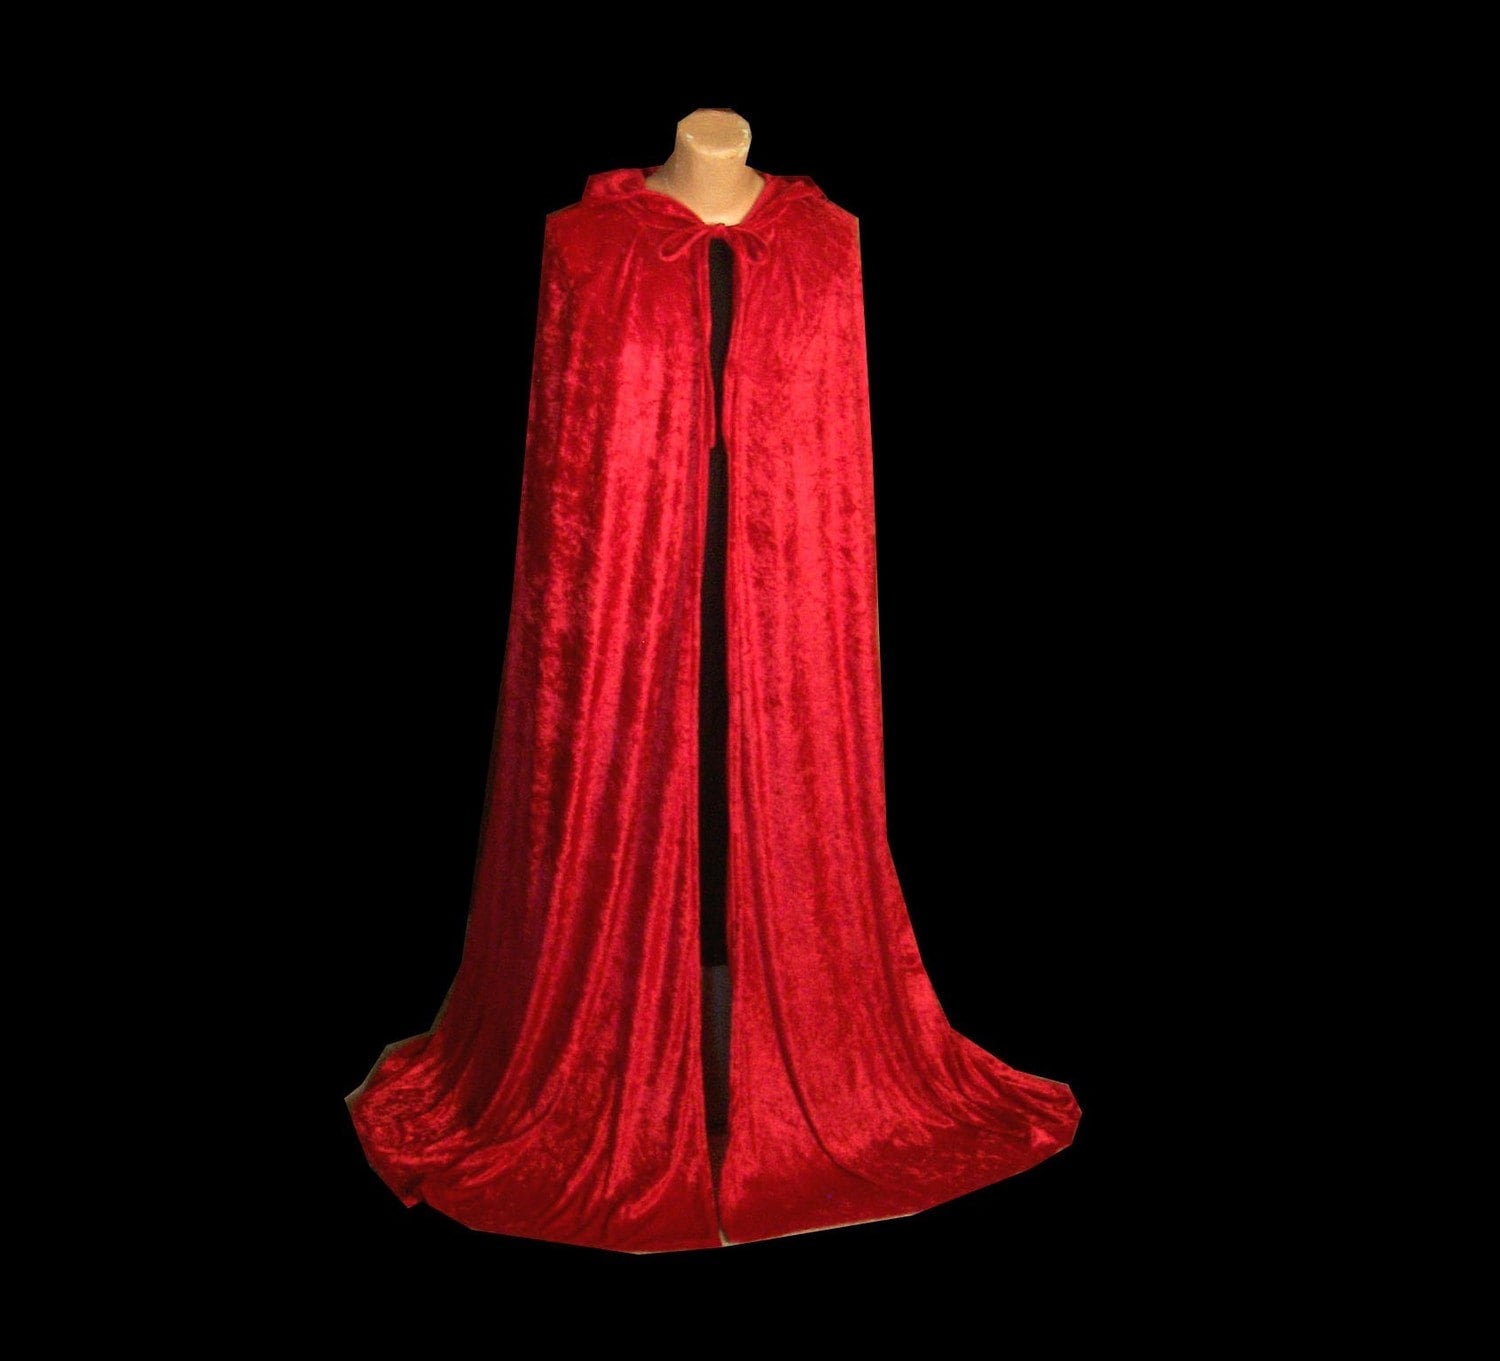 Red Velvet Cloak Cape Hooded Renaissance Medieval Christmas